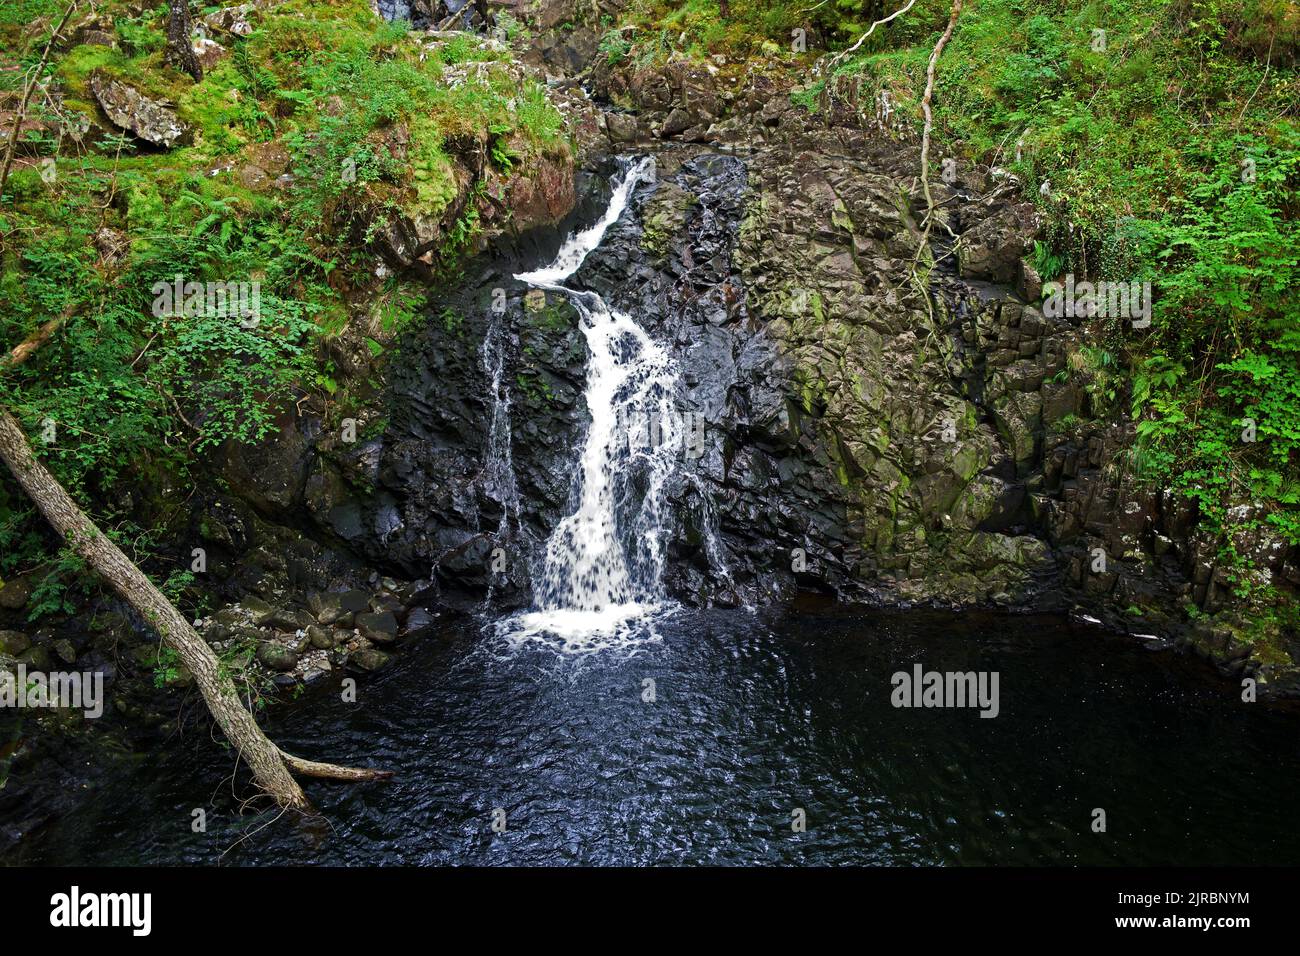 Rhaeadr DDU (cascata Nera) si trova nella riserva naturale nazionale di Coed Ganllwyd (antico bosco) vicino al villaggio di Ganllwyd nel Galles del Nord. Foto Stock